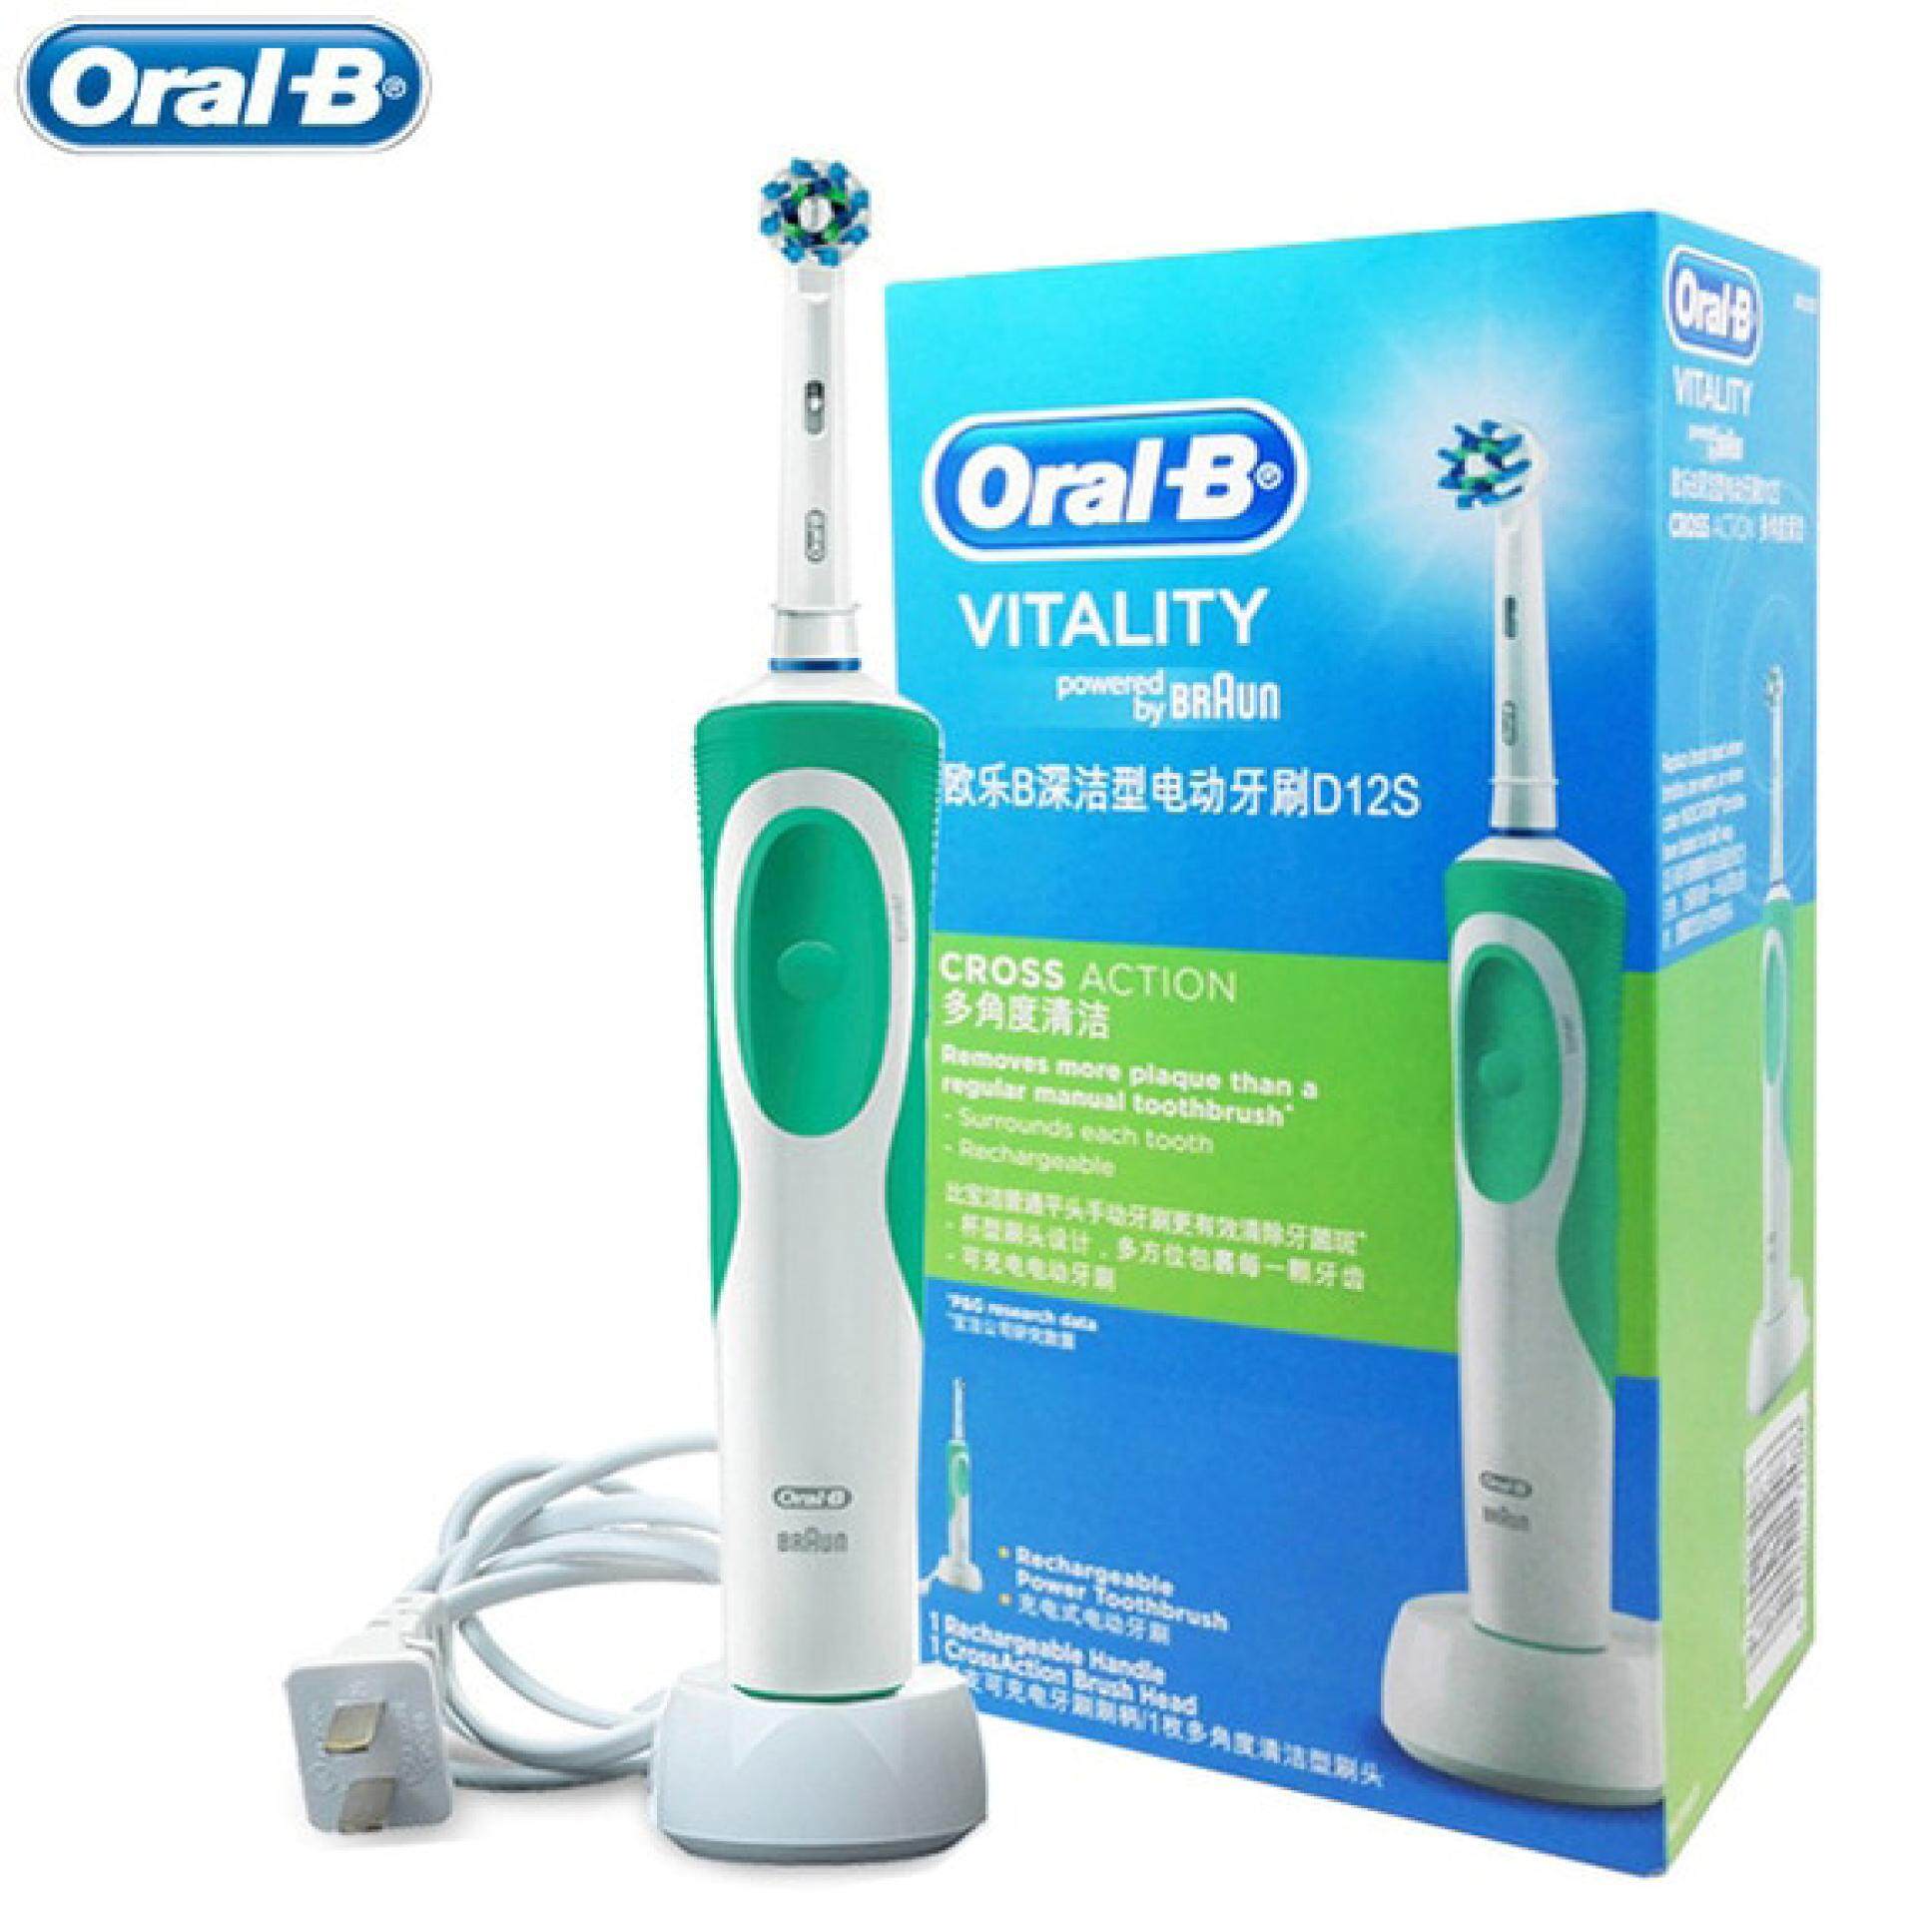 แปรงสีฟันไฟฟ้า ทำความสะอาดทุกซี่ฟันอย่างหมดจด ชัยนาท Oral B electric toothbrush  Oral B Electric Toothbrush Vitality Precision CLEAN